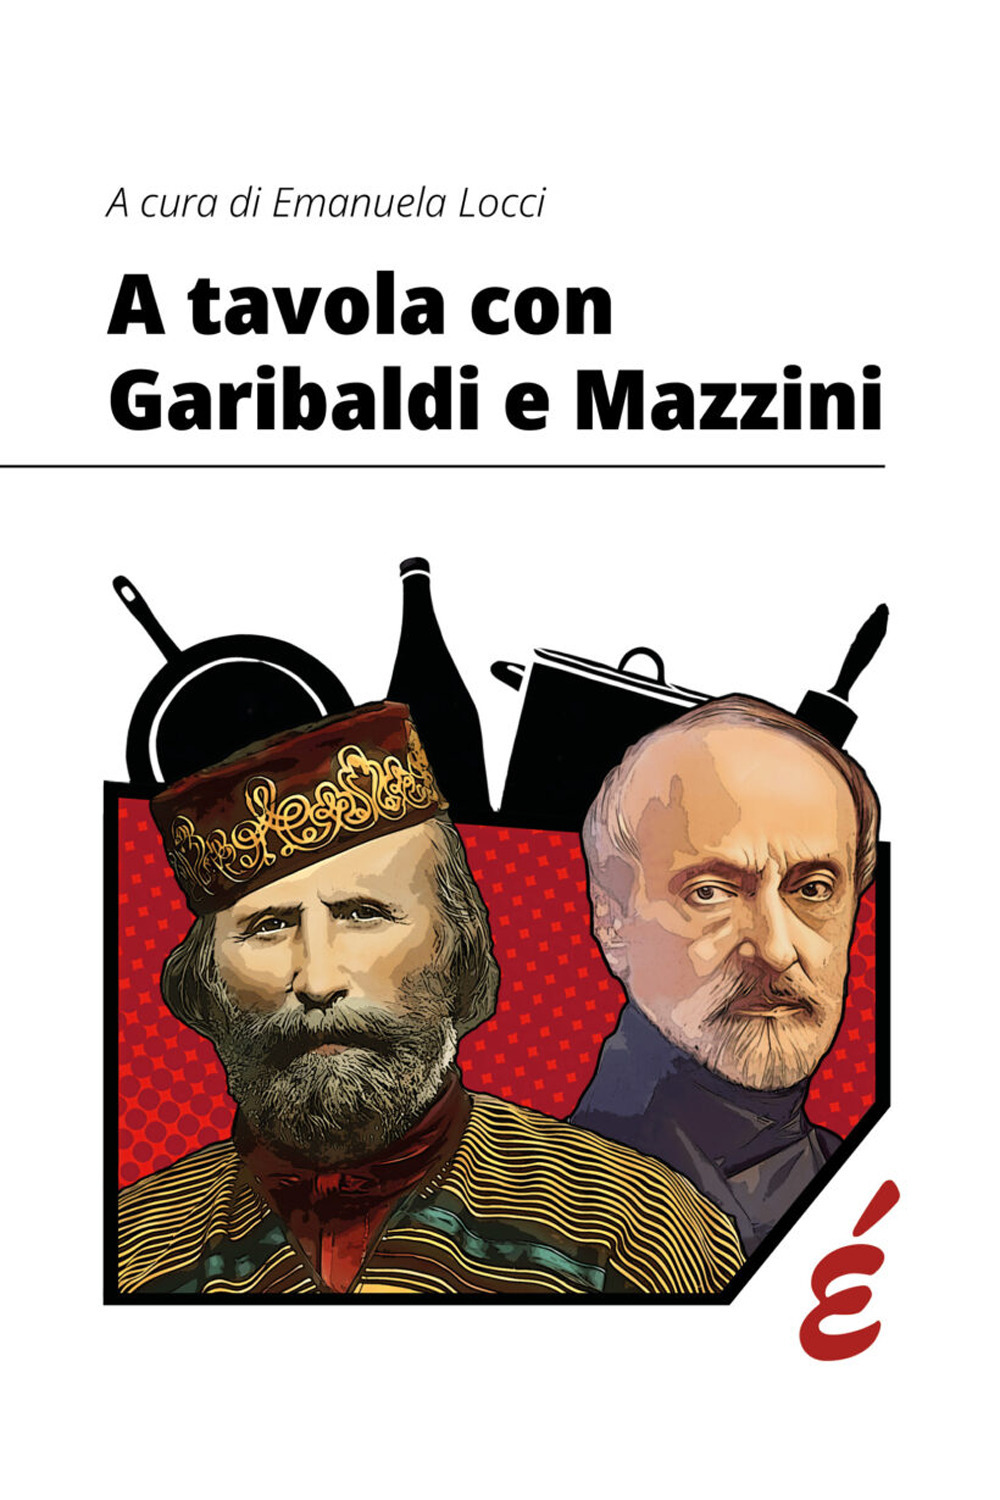 A tavola con Garibaldi e Mazzini